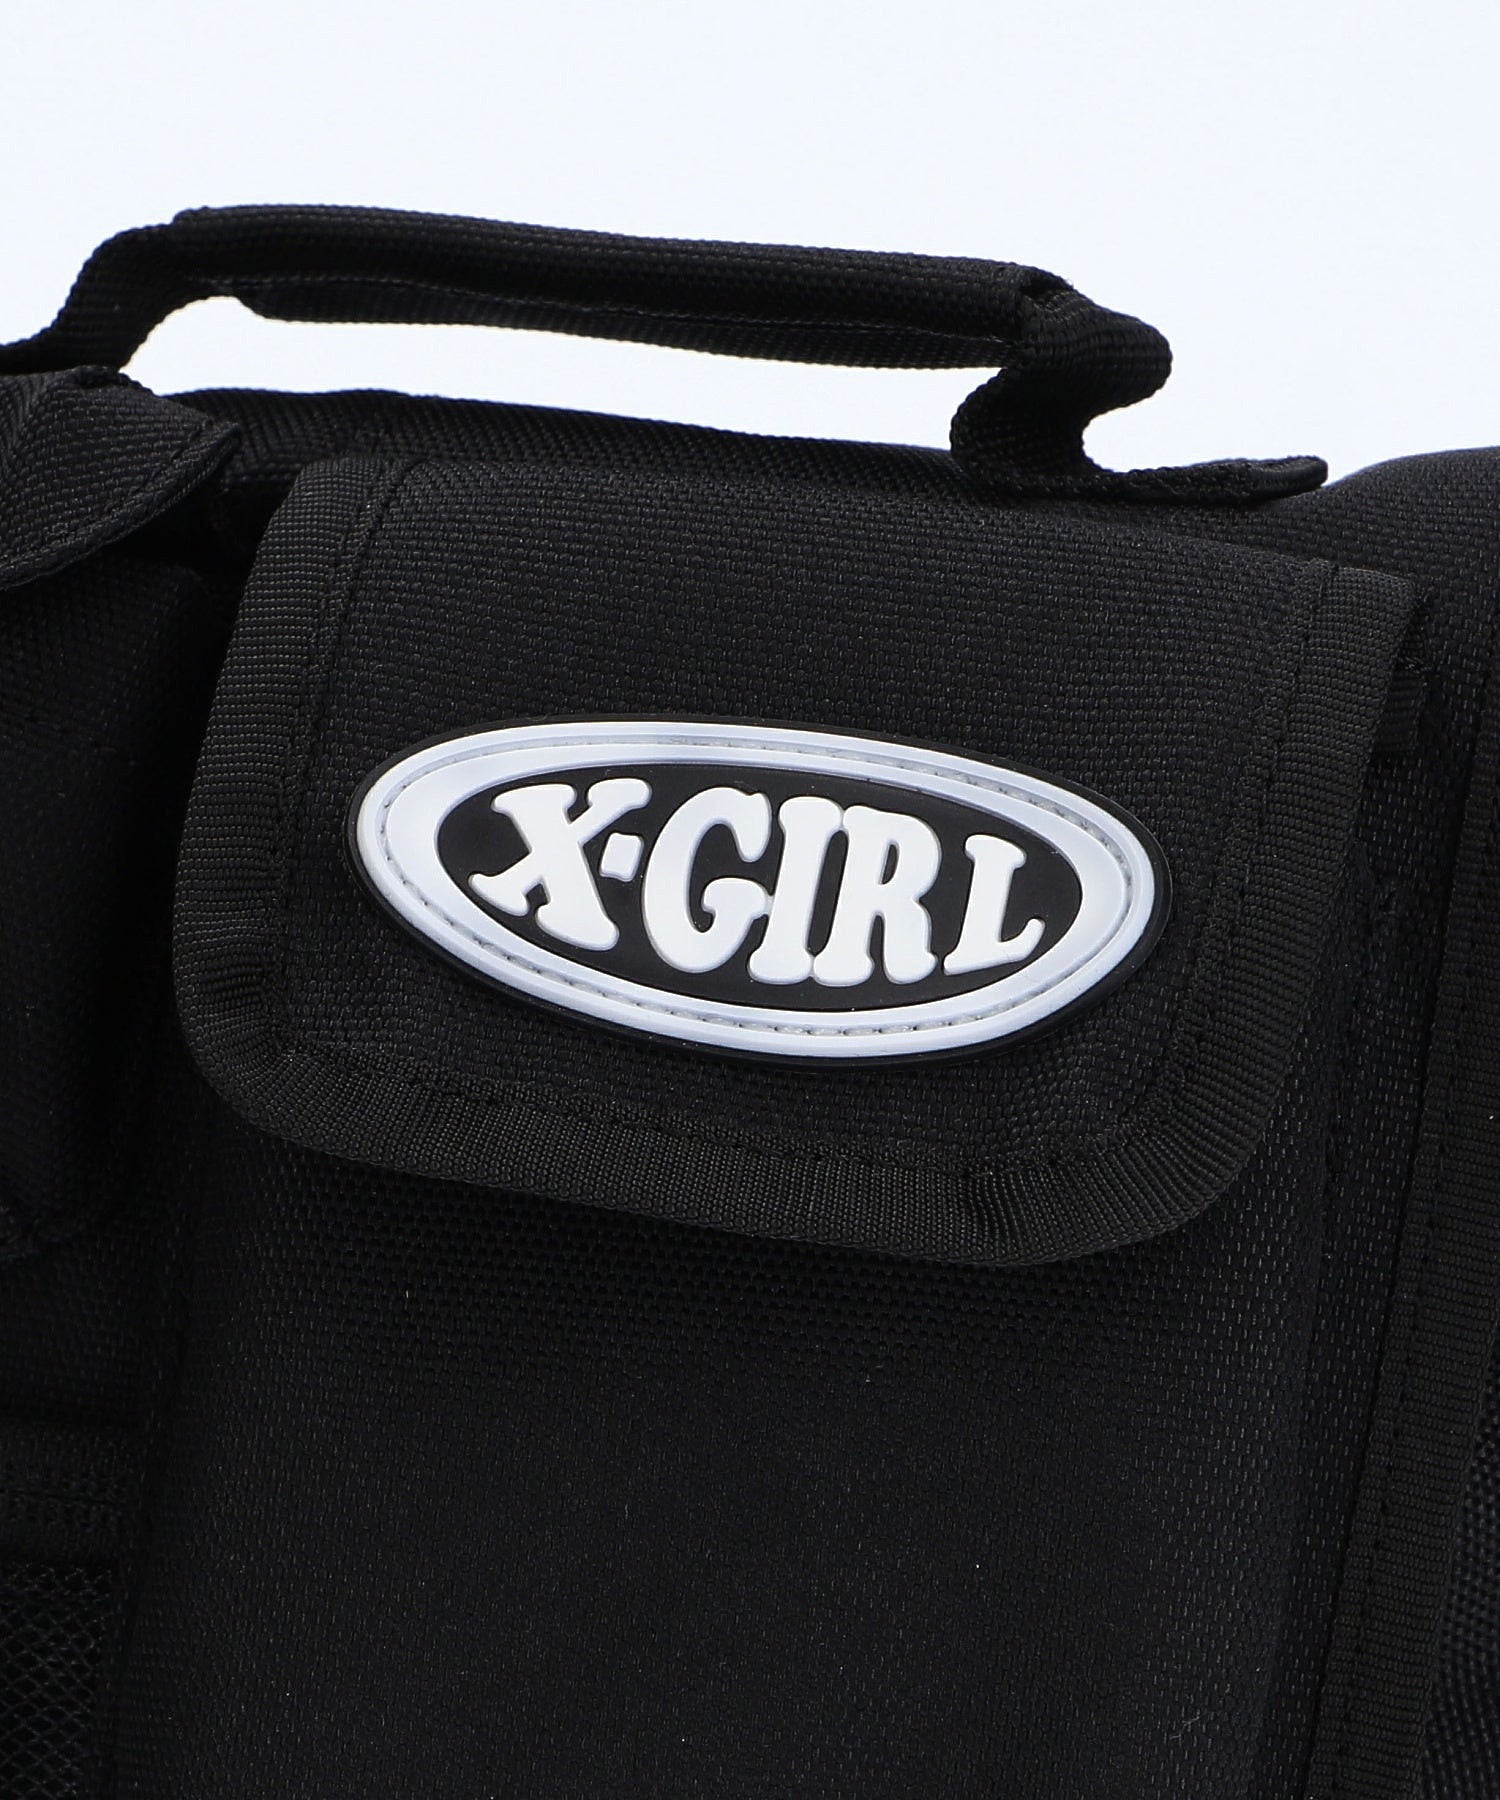 MULTI POCKET SHOULDER BAG X-girl